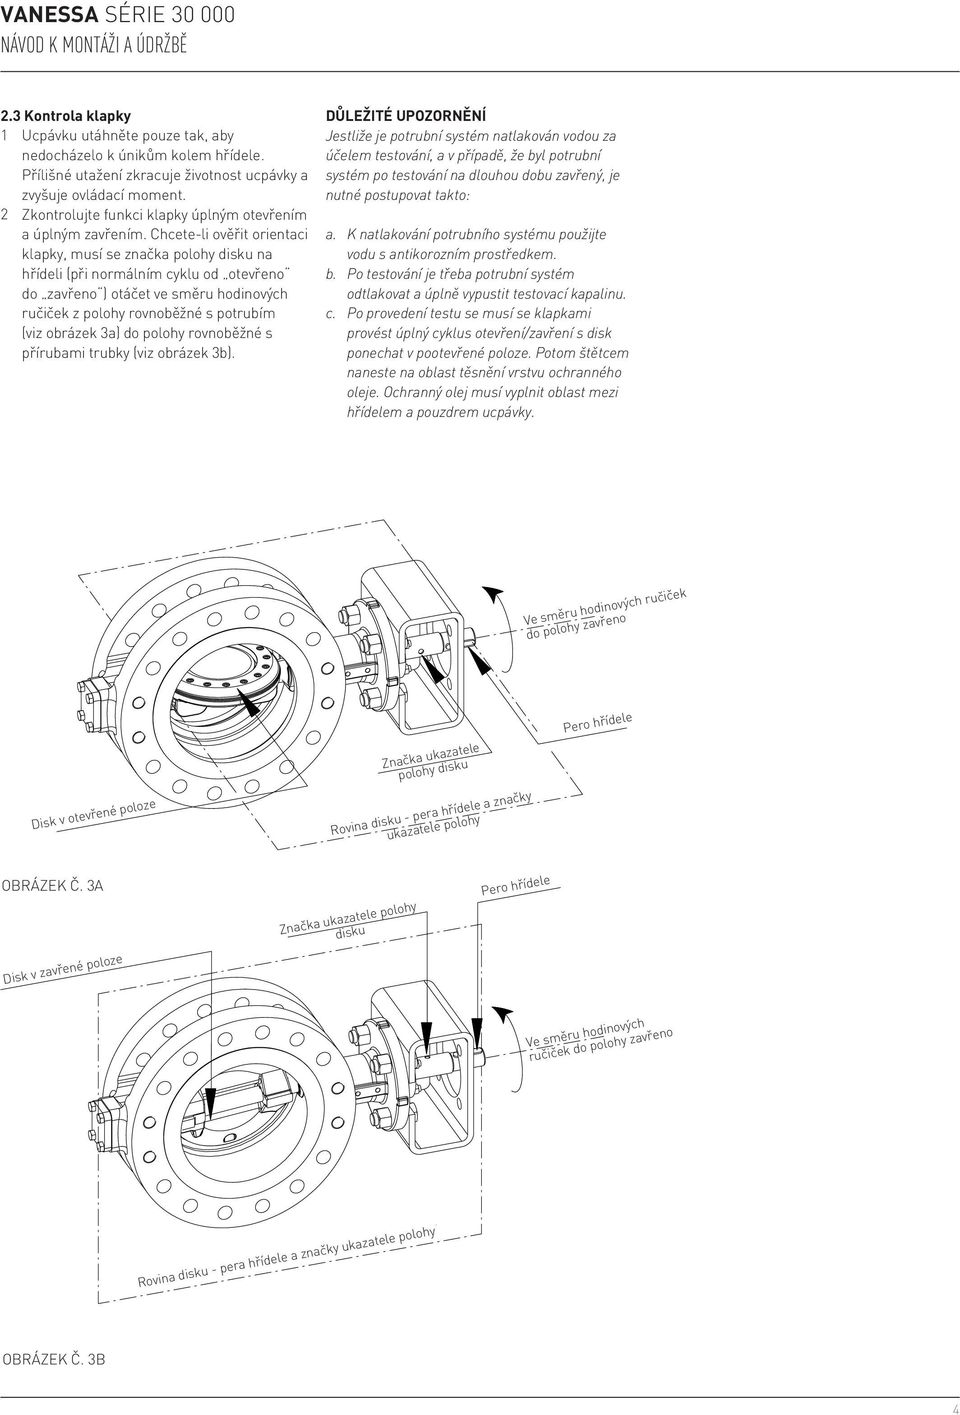 Chcete-li ověřit orientaci klapky, musí se značka polohy disku na hřídeli (při normálním cyklu od otevřeno do zavřeno ) otáčet ve směru hodinových ručiček z polohy rovnoběžné s potrubím (viz obrázek